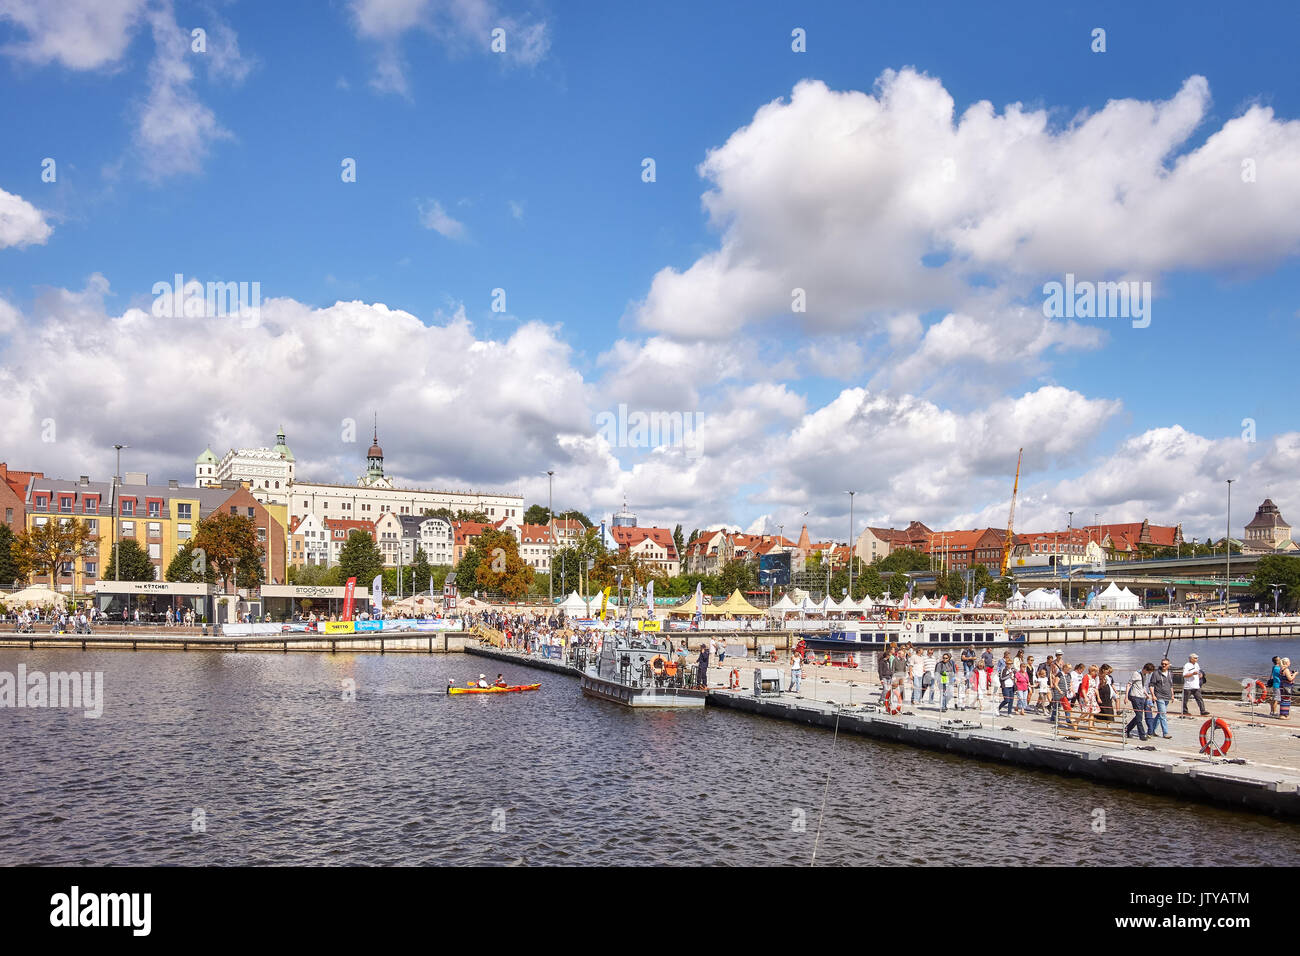 Szczecin, Pologne - Août 06, 2017 : Les visiteurs traversent la rivière Oder avec pont flottant militaire pendant la finale de la Tall Ships Races 2017. Banque D'Images